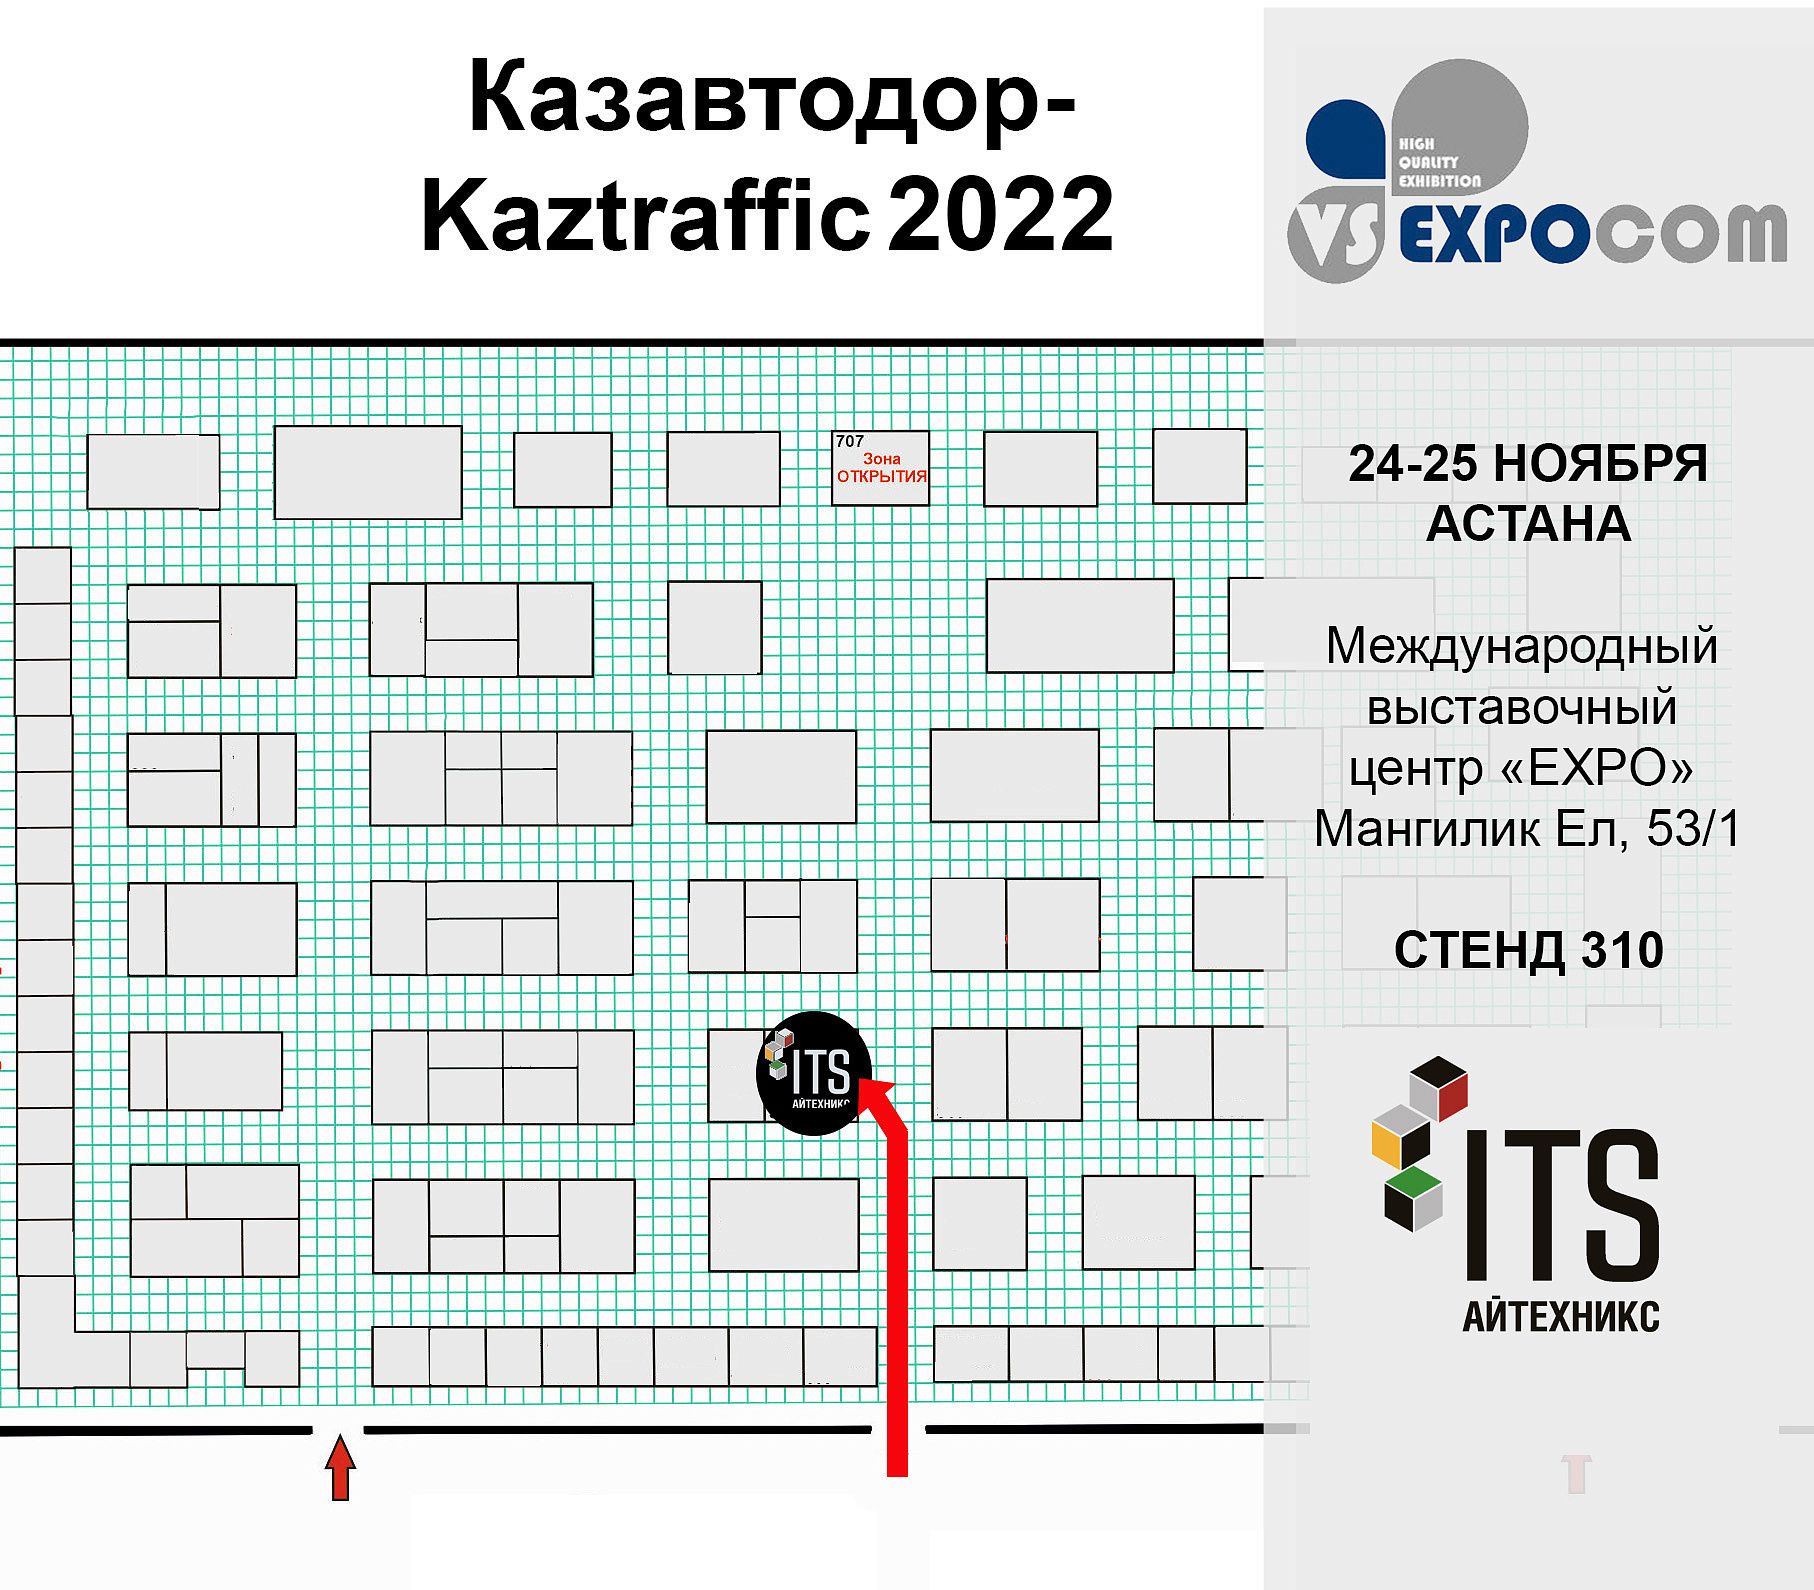 Участвуем в выставке «Казавтодор-Kaztraffic 2022» в Астане